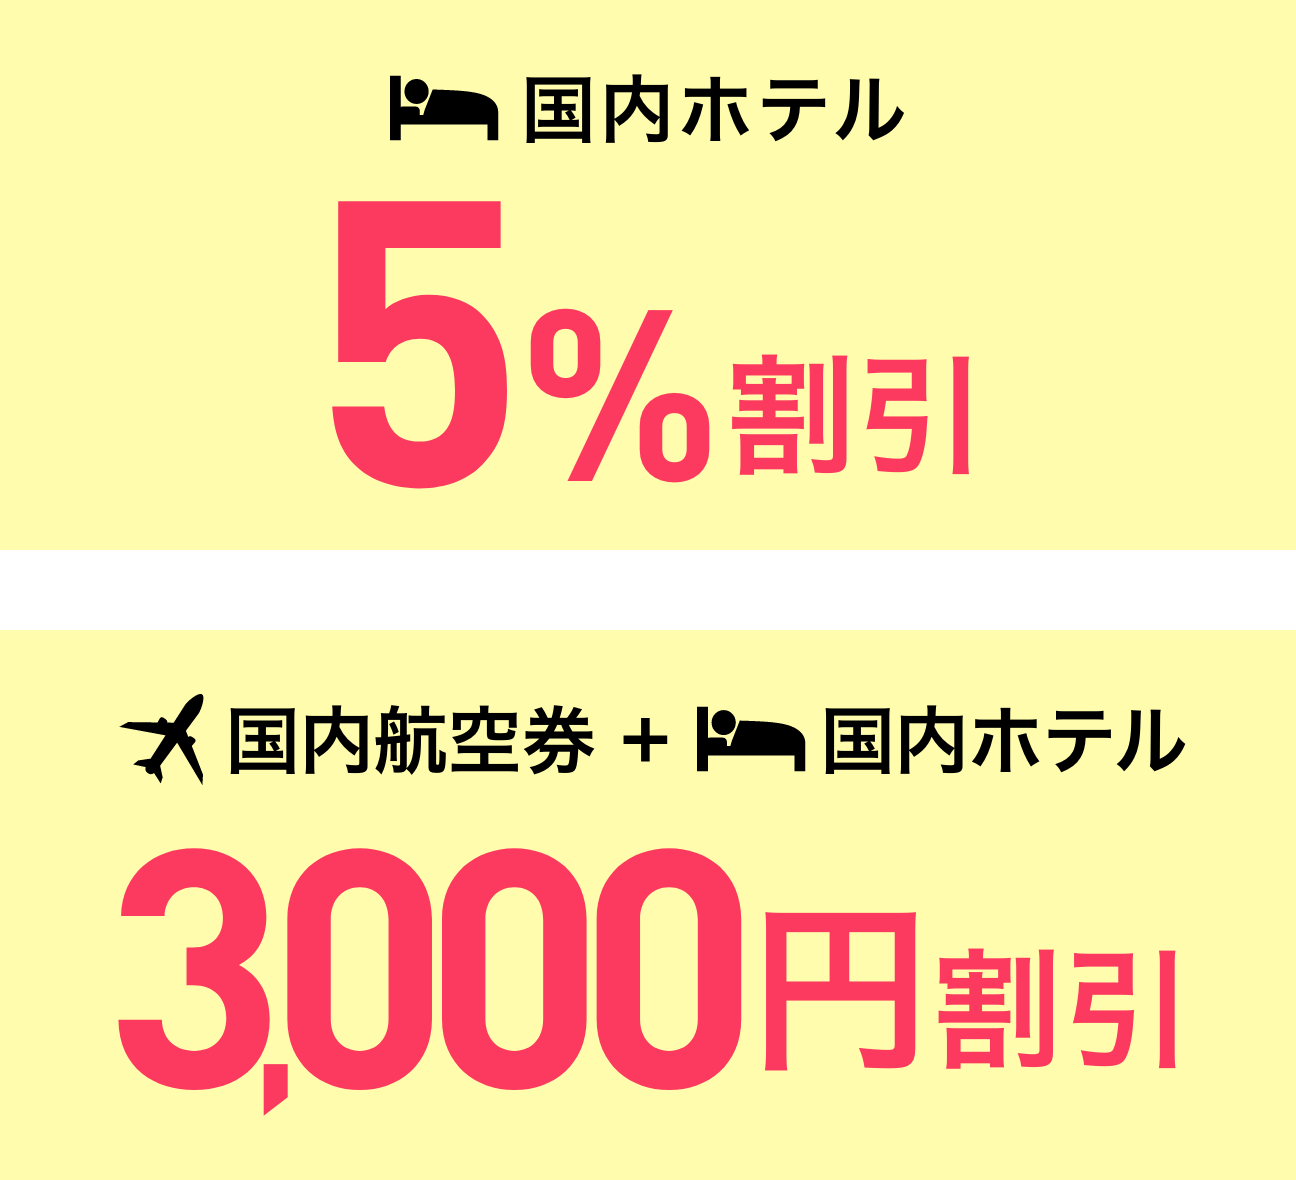 国内ホテル 5%割引 国内航空券＋国内ホテル3,000円割引